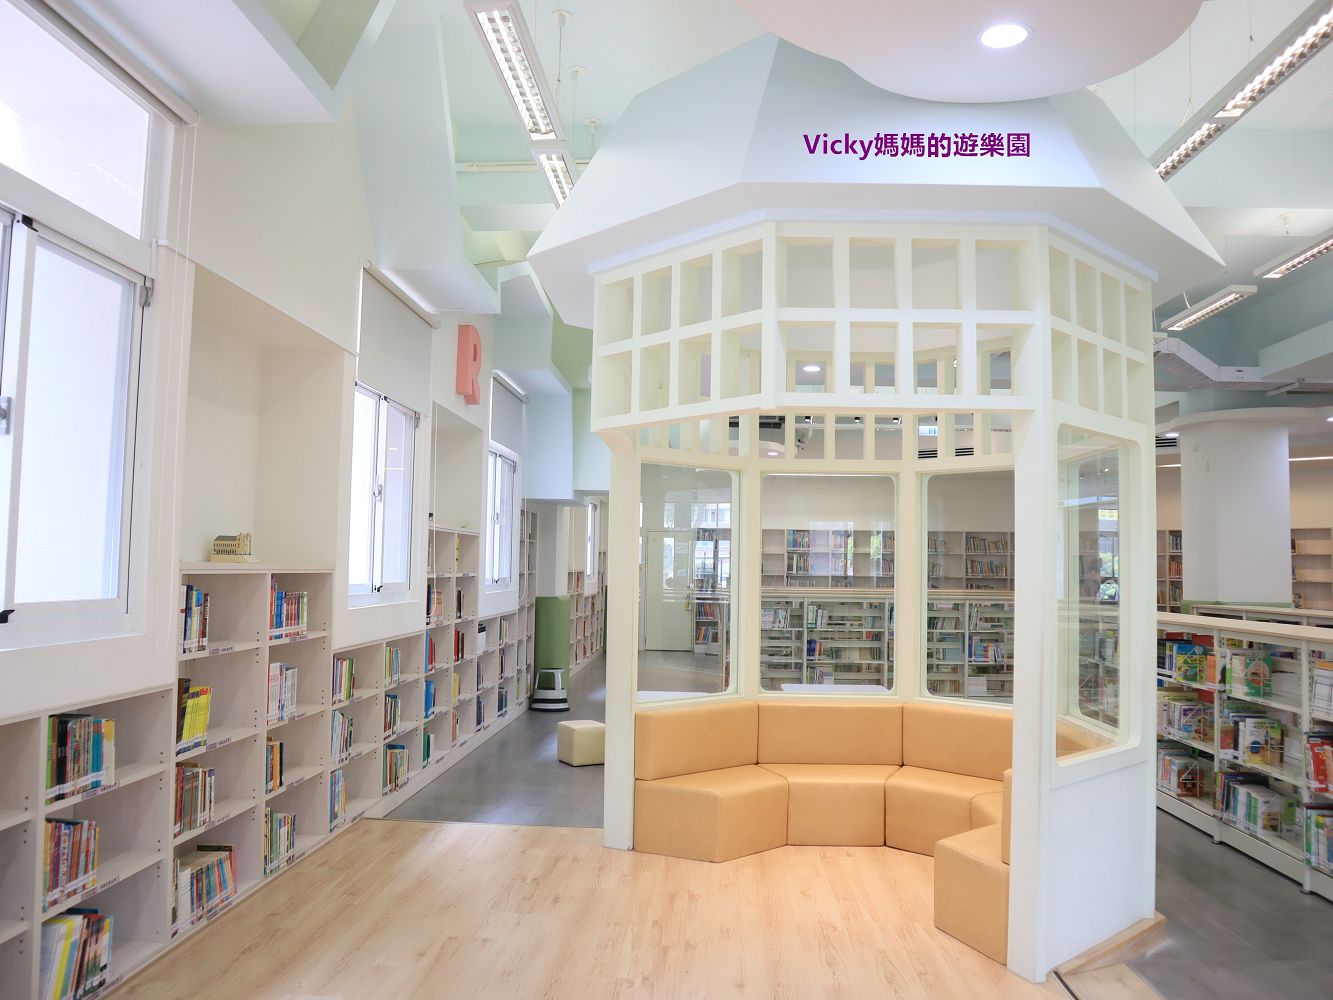 特色圖書館︱高雄市立圖書館旗山分館：走進浩瀚的書山中，層層堆疊的是知識的寶庫